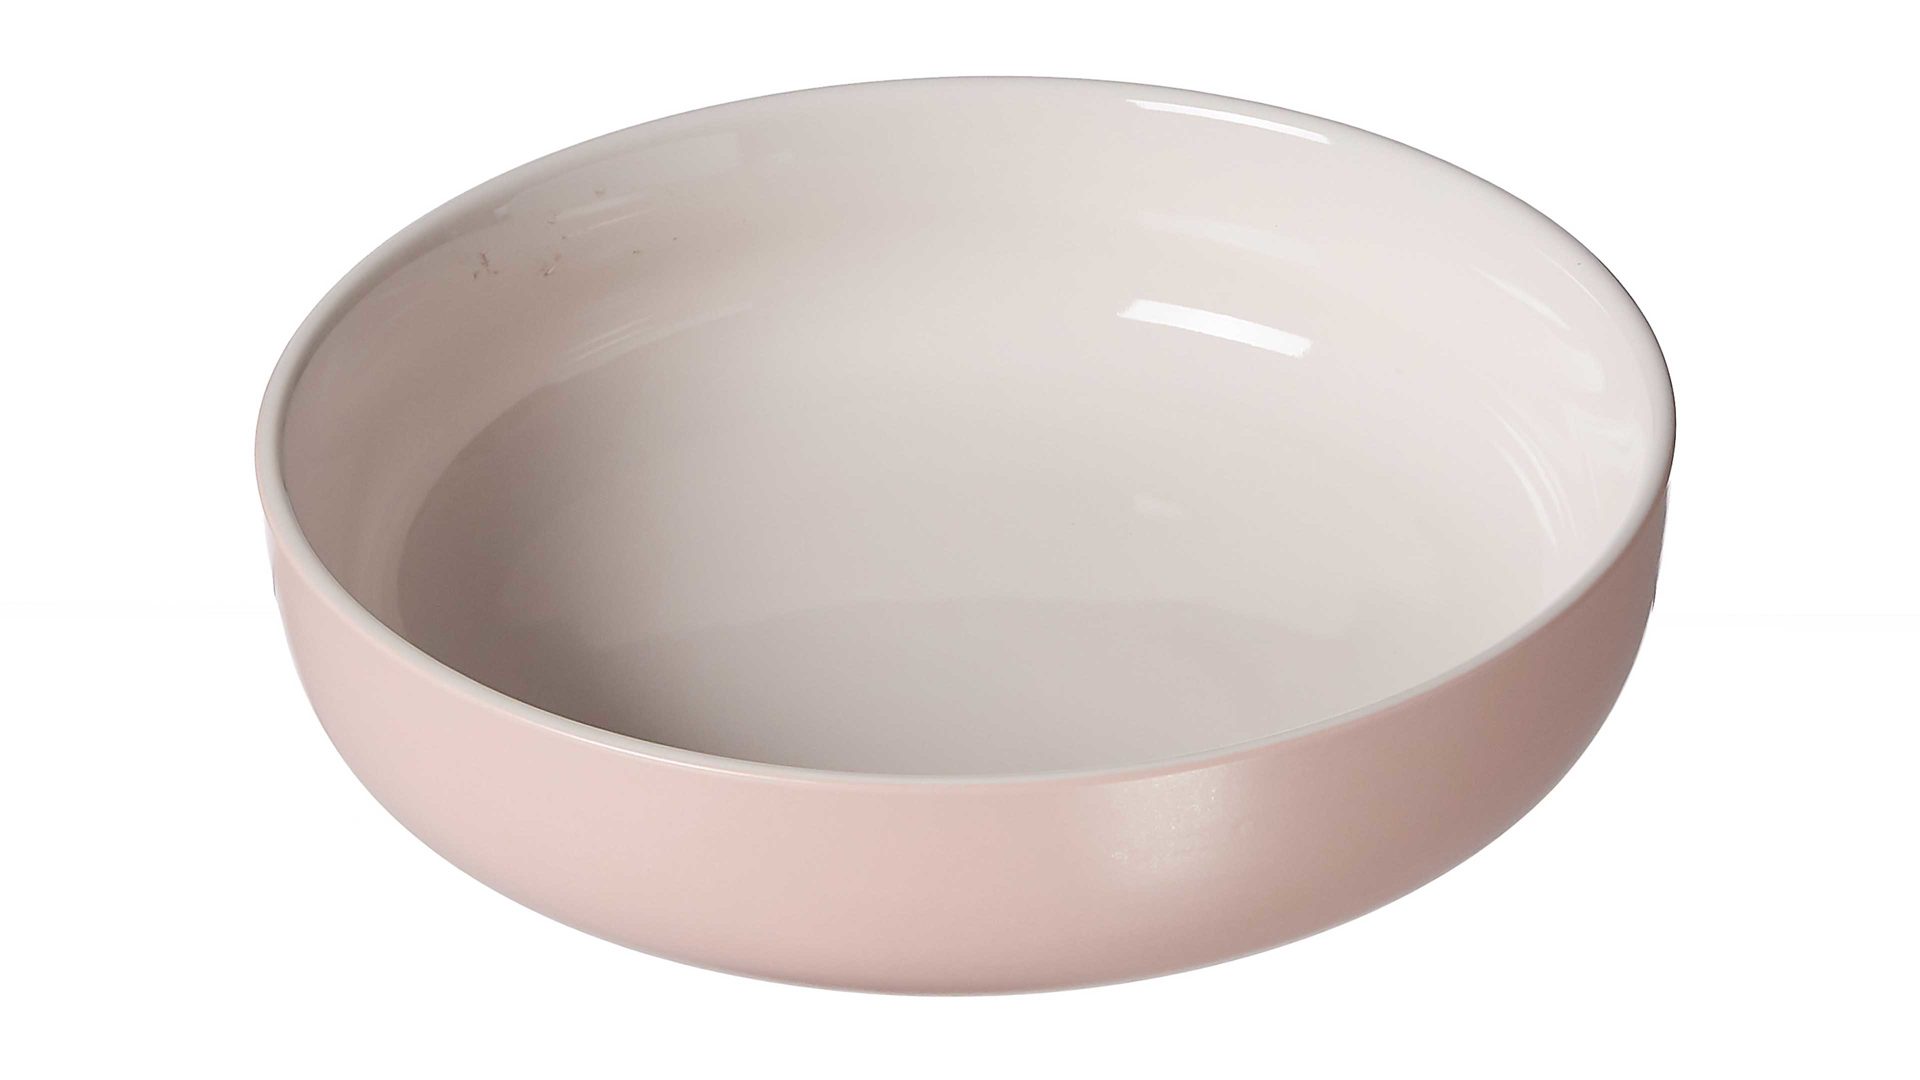 Schale Interliving BEST BUDDYS! aus Keramik in Pink Interliving BEST BUDDYS!  Schale Jasper roséfarbenes Steinzeug – Durchmesser ca. 19 cm